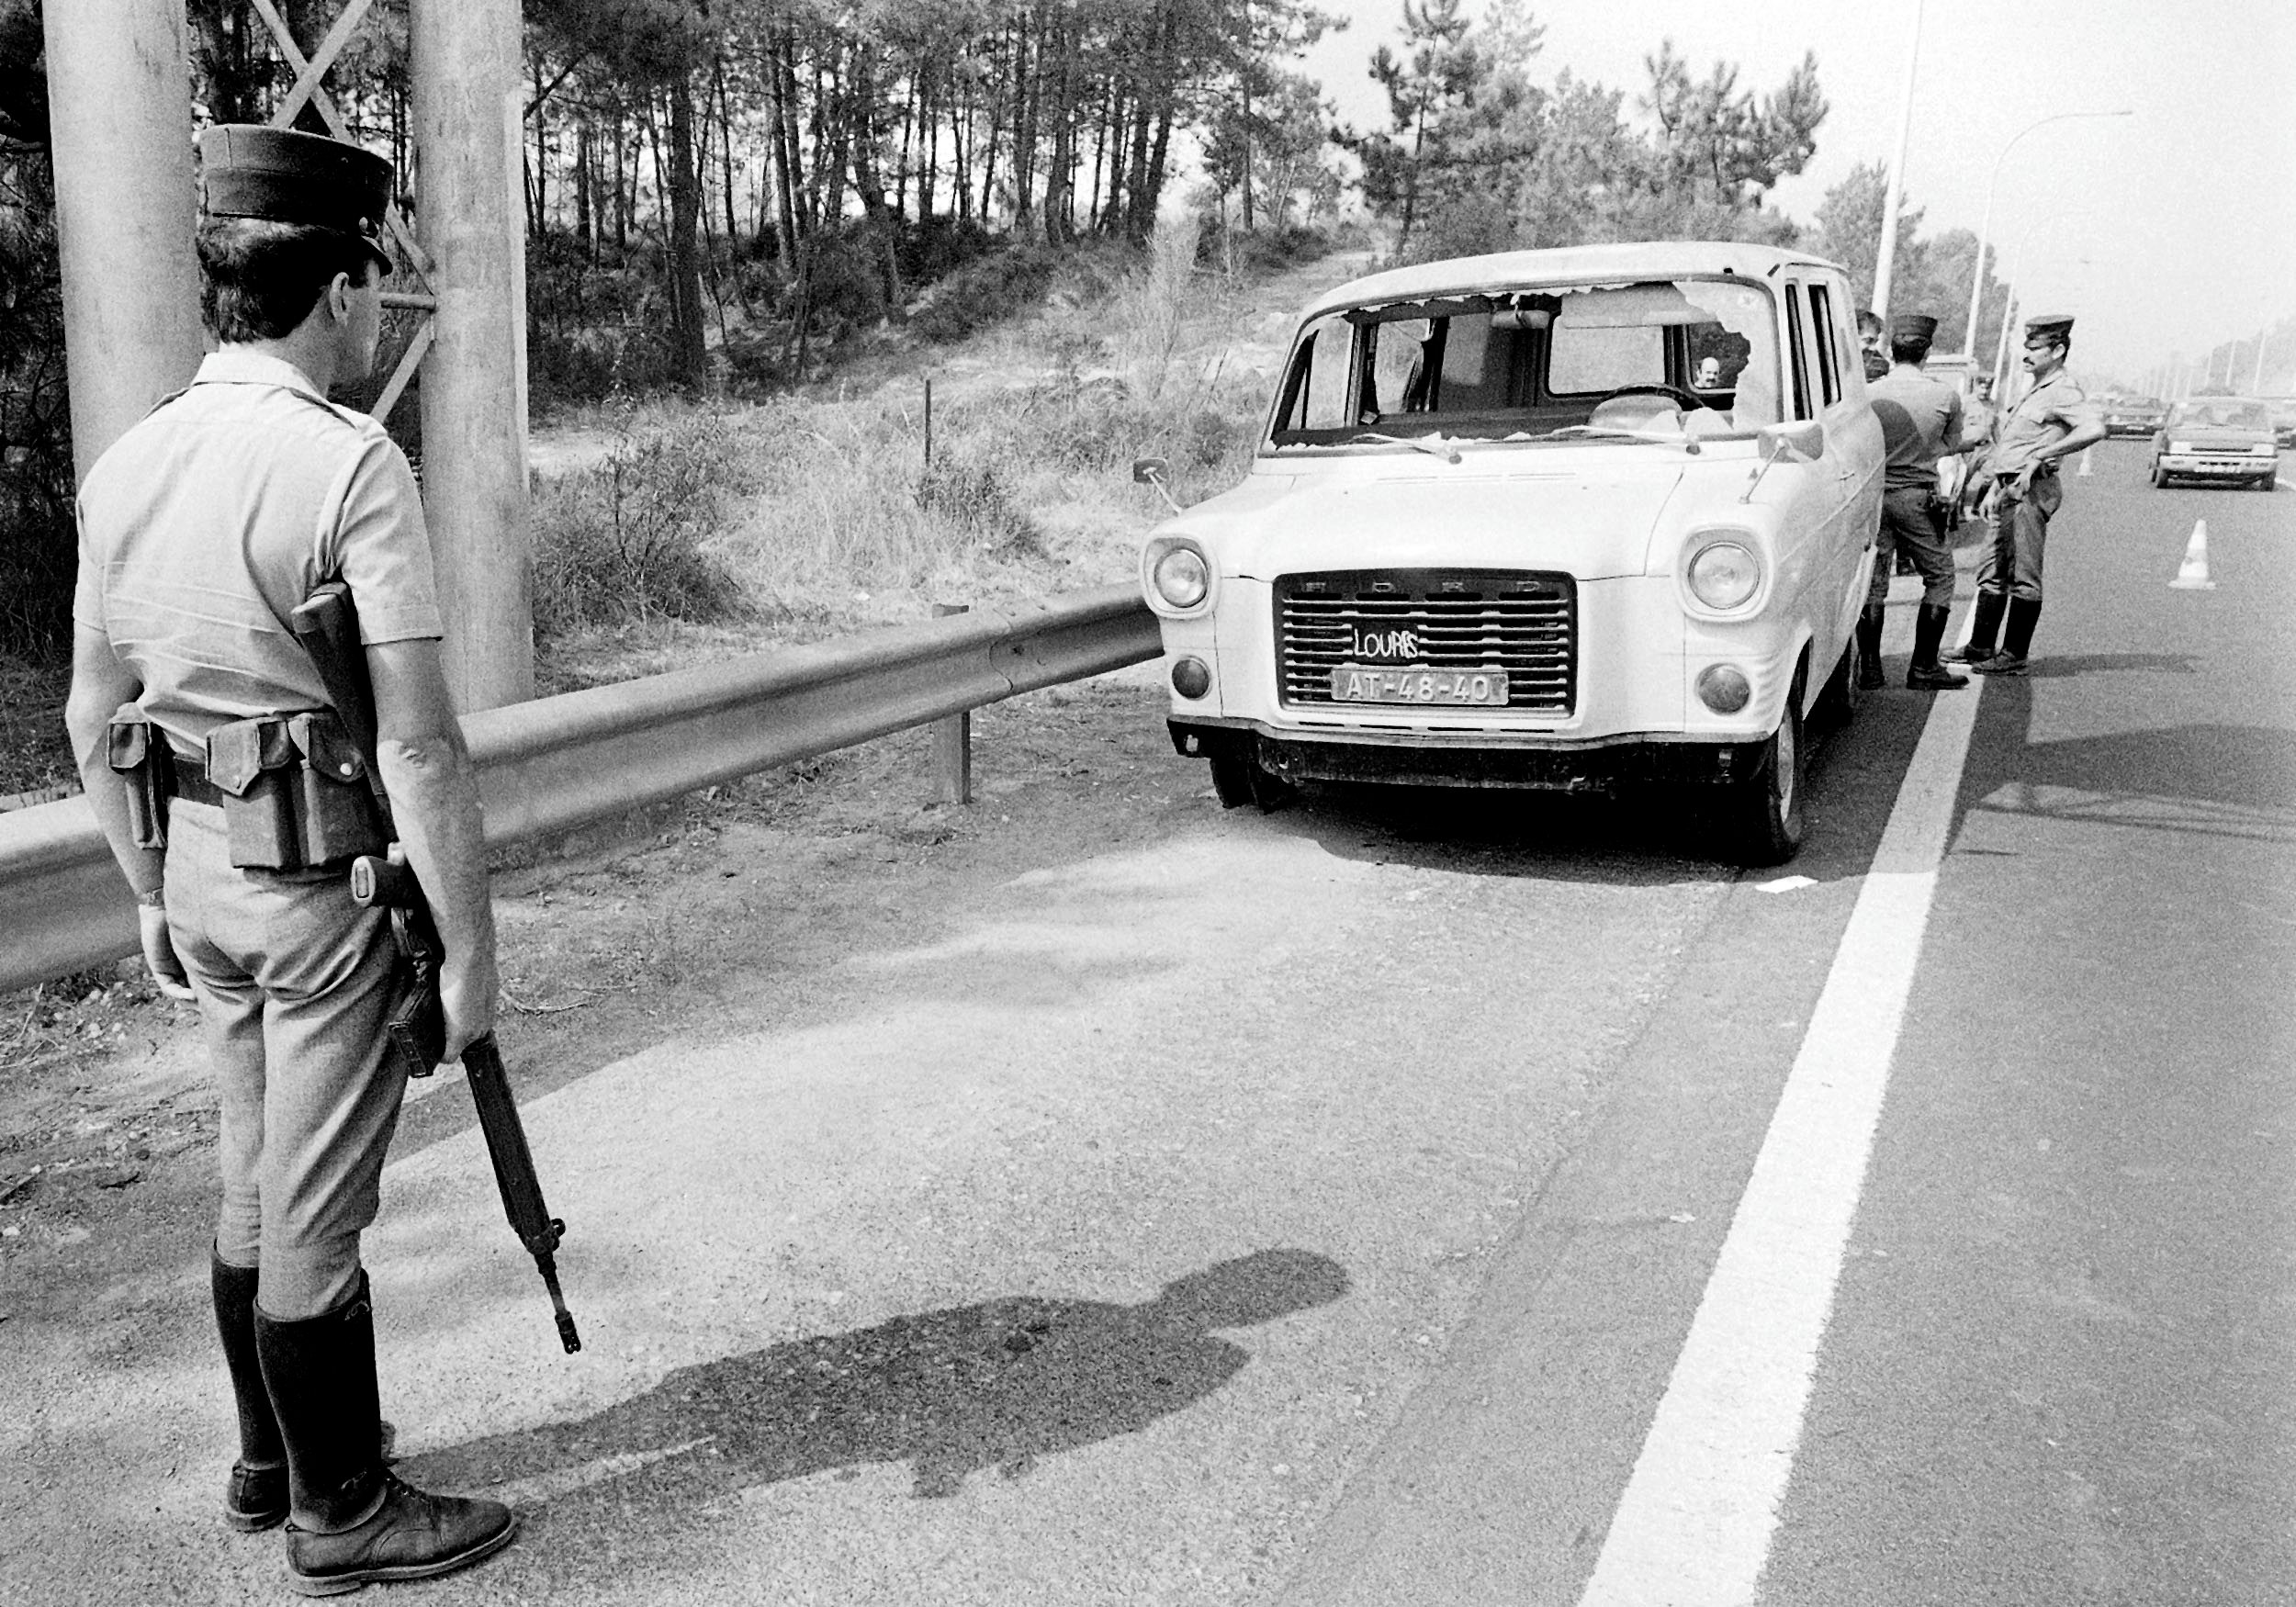 A polícia inspeciona o carro utilizado pelos militantes da FP-25, após a evasão da Cadeia de Lisboa, em Lisboa, em 21 de setembro de 1985. Esses militantes são acusados ​​de atos terroristas. ALFREDO CUNHA / LUSA